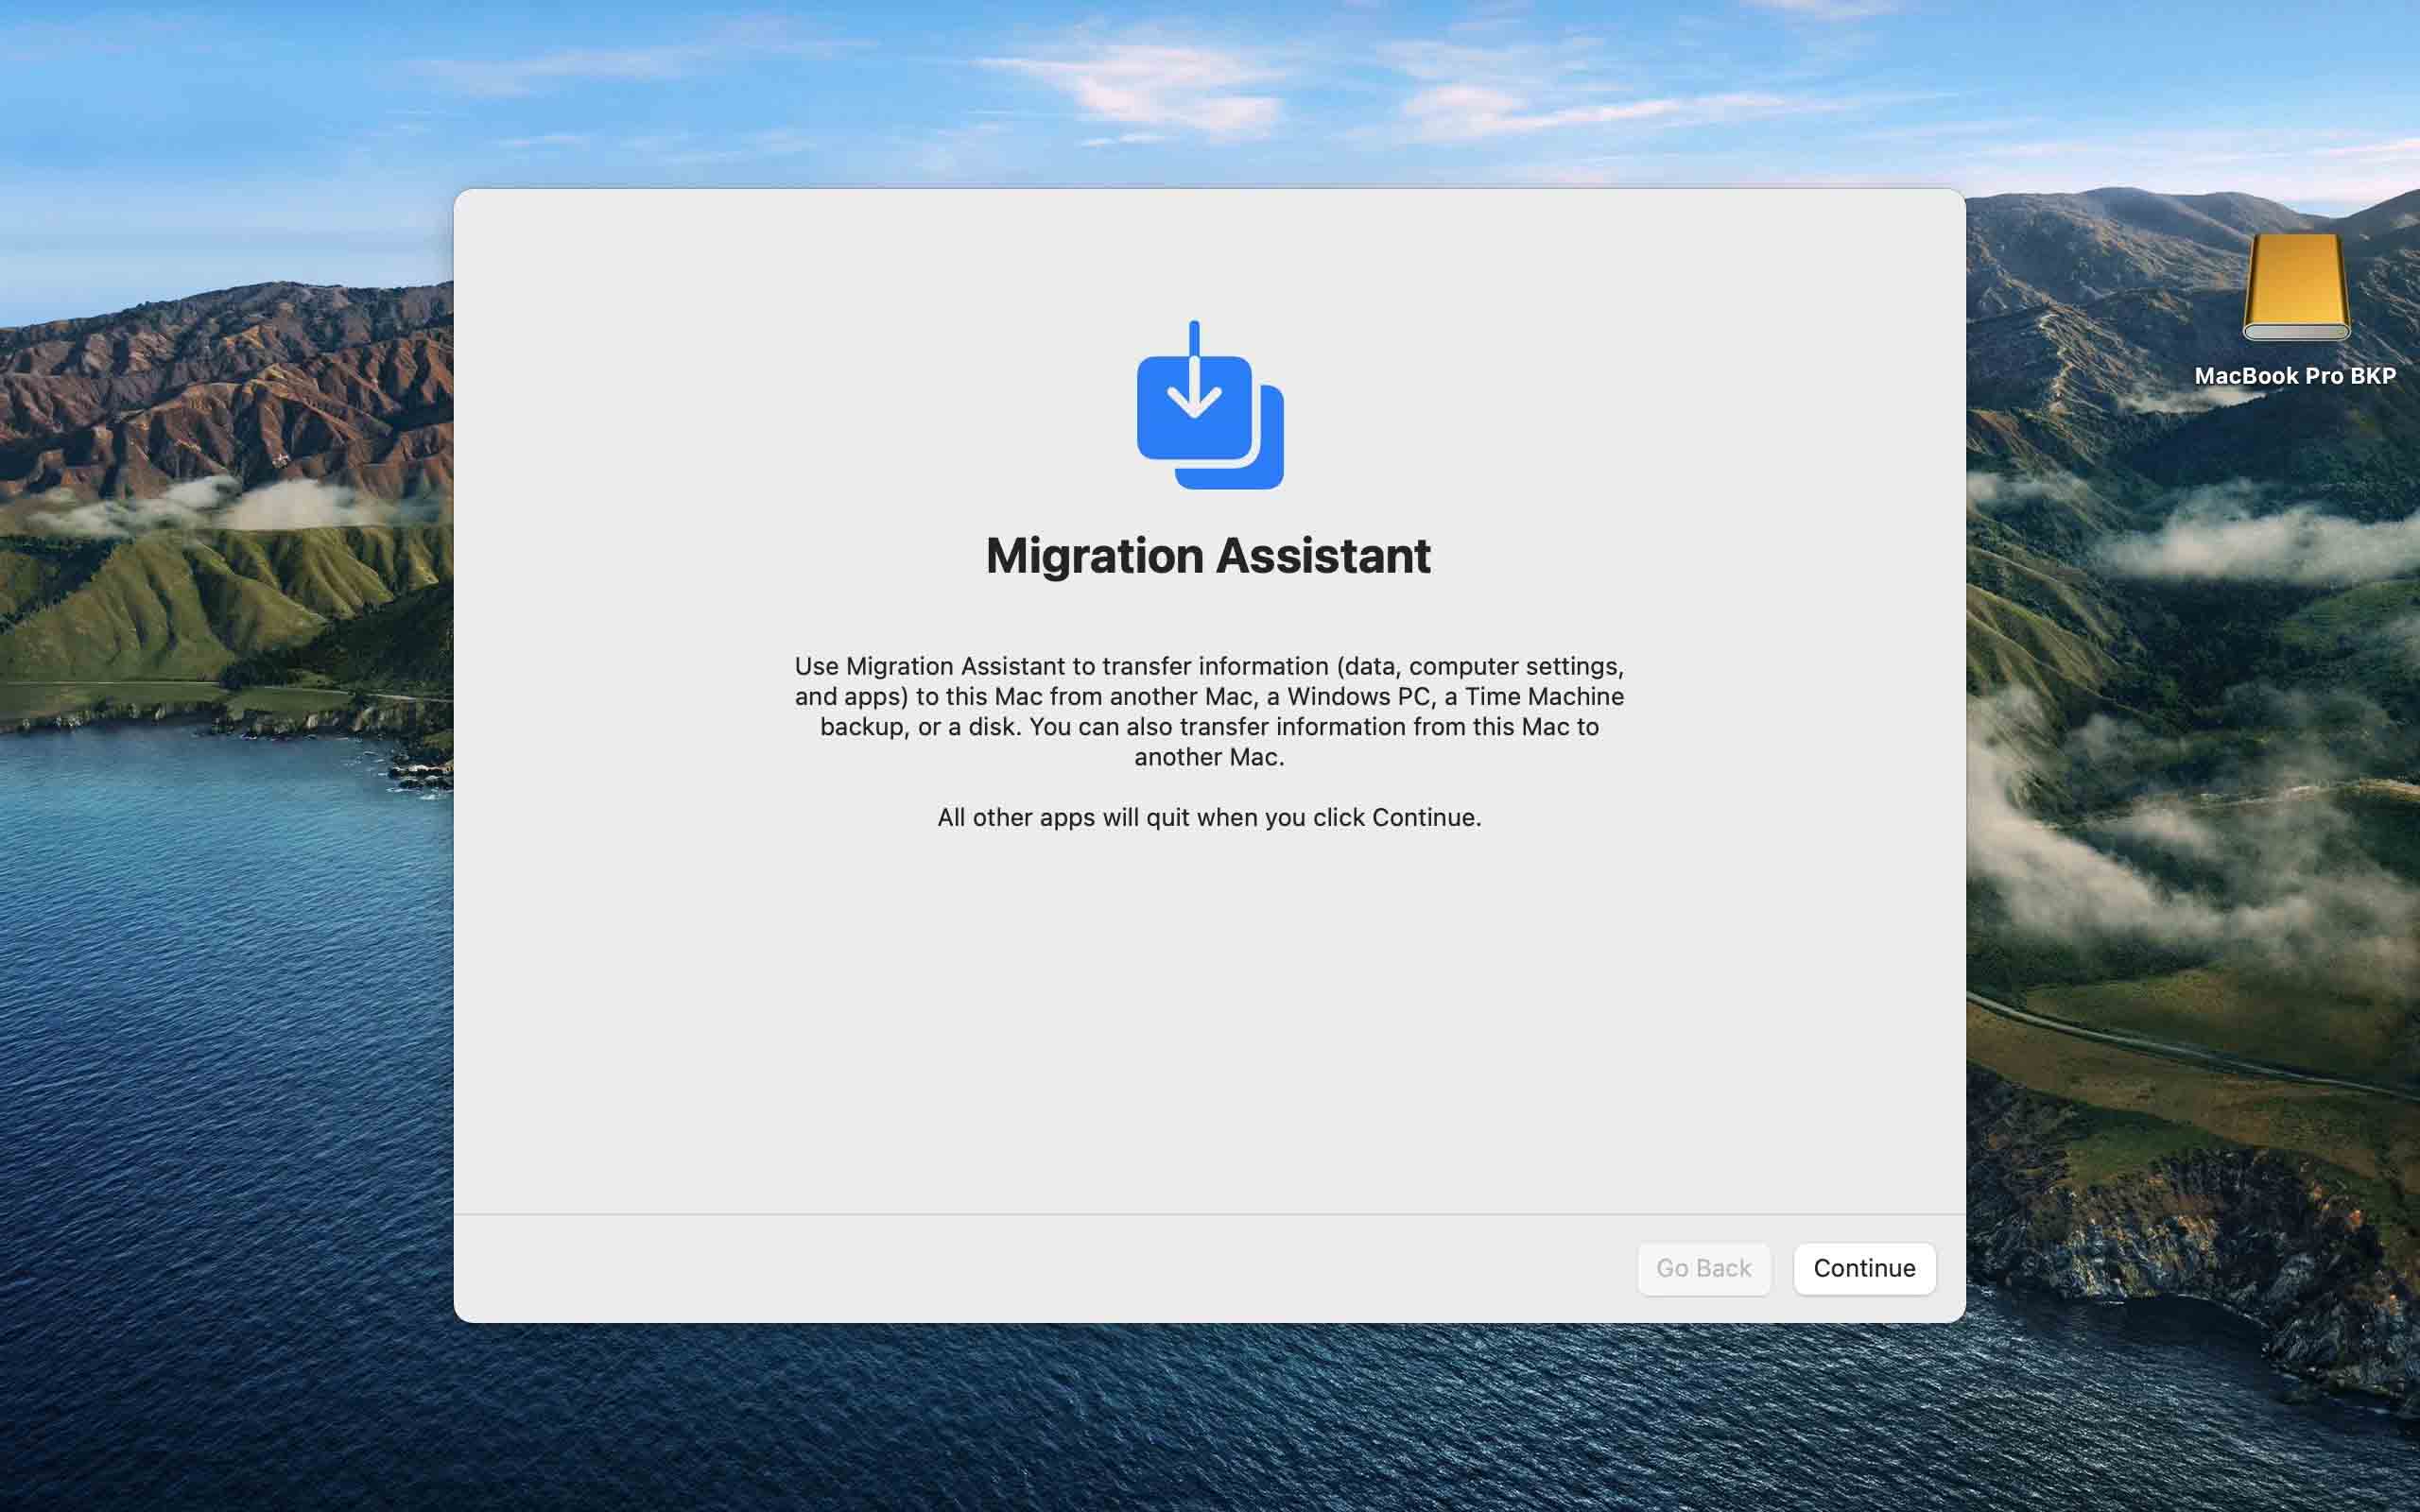 Open Migration Assistant